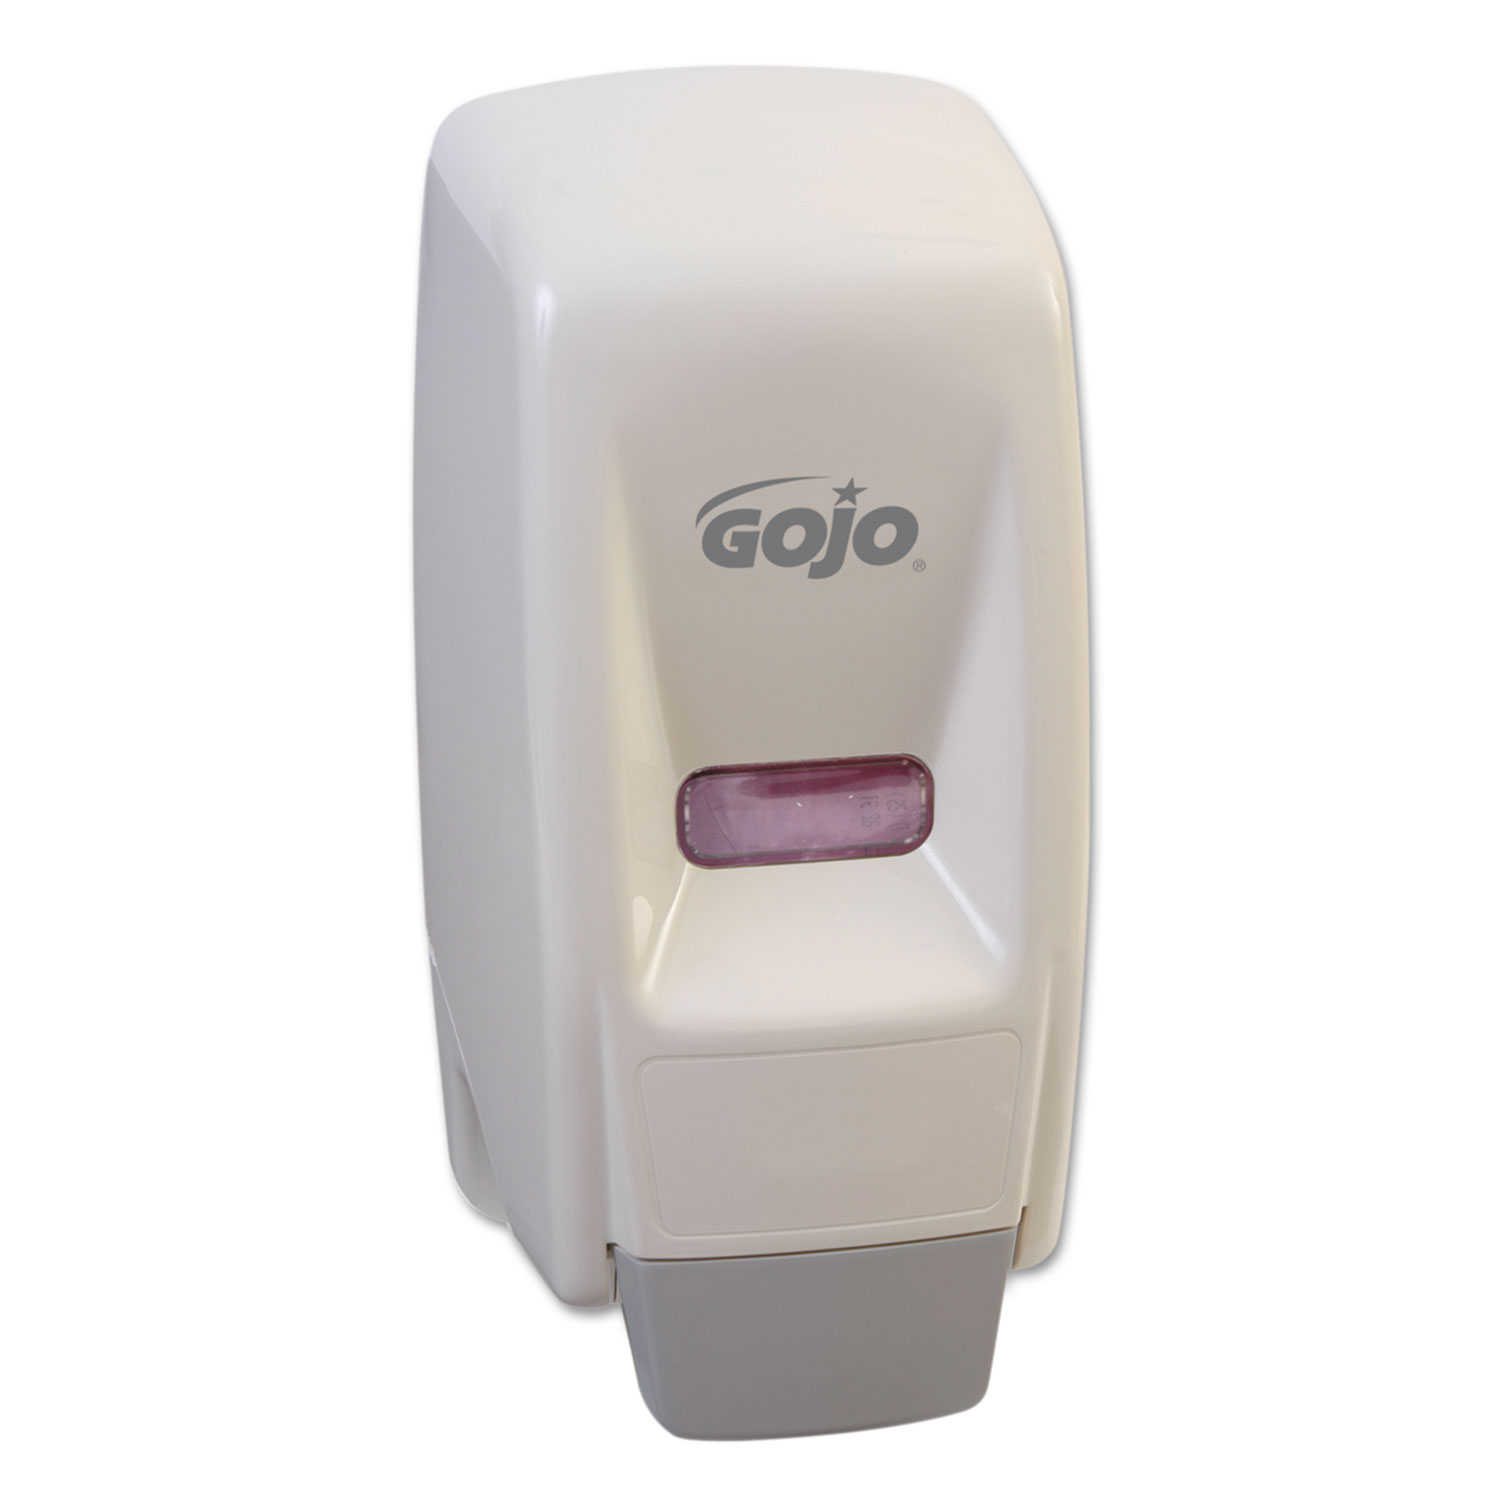  GOJO 9034-12 Bag-In-Box Liquid Soap Dispenser, 800 mL, 5.75 x 5.5 x 5.13, White (GOJ903412) 